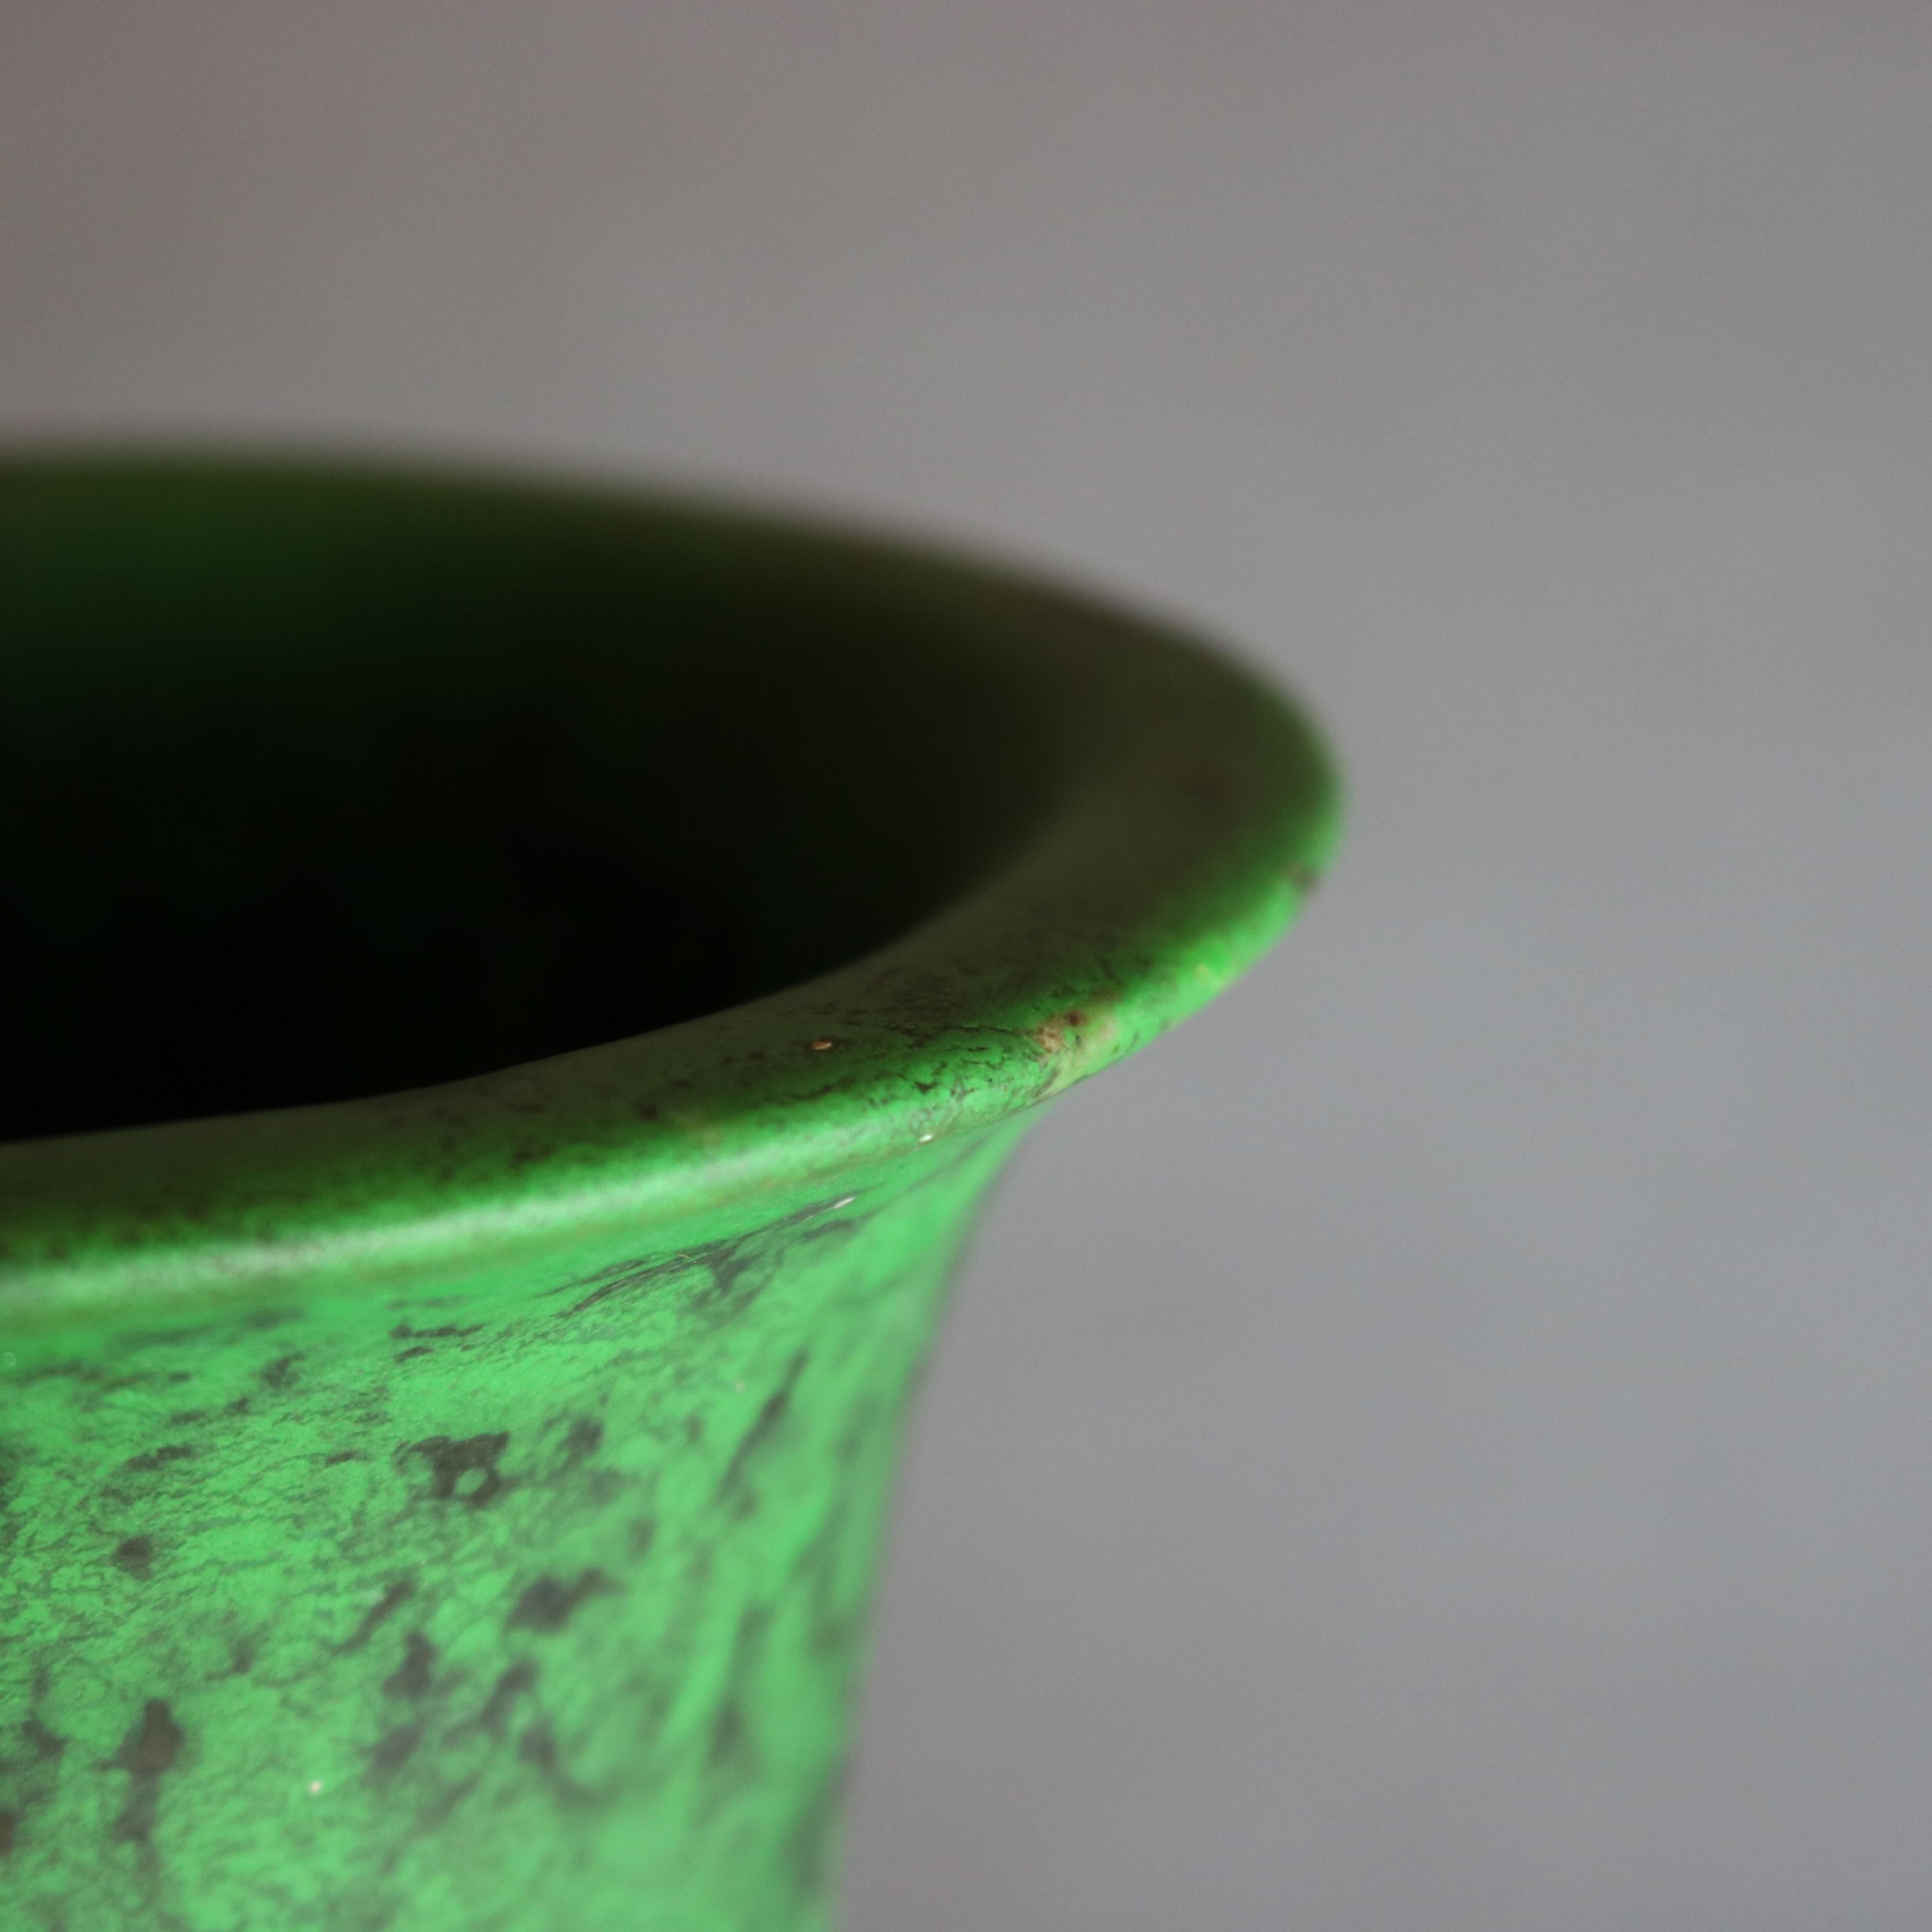 Ceramic Antique Arts & Crafts Weller Art Pottery Coppertone Vase, Circa 1920